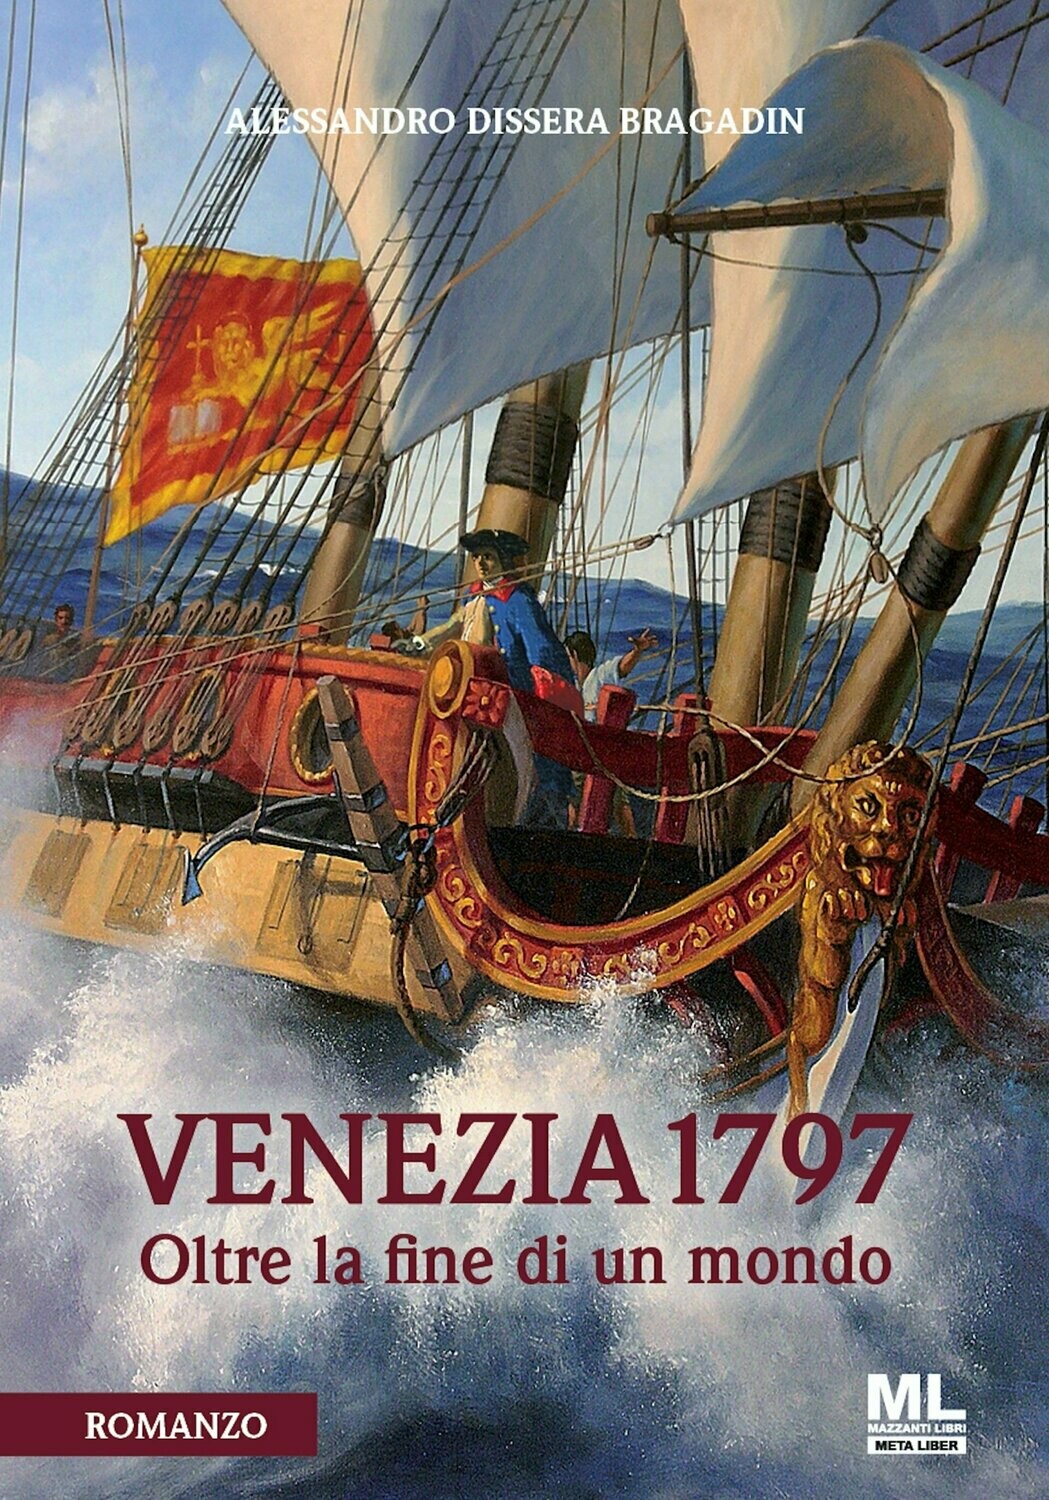 VENEZIA 1797 (Ebook MetaLiber©)